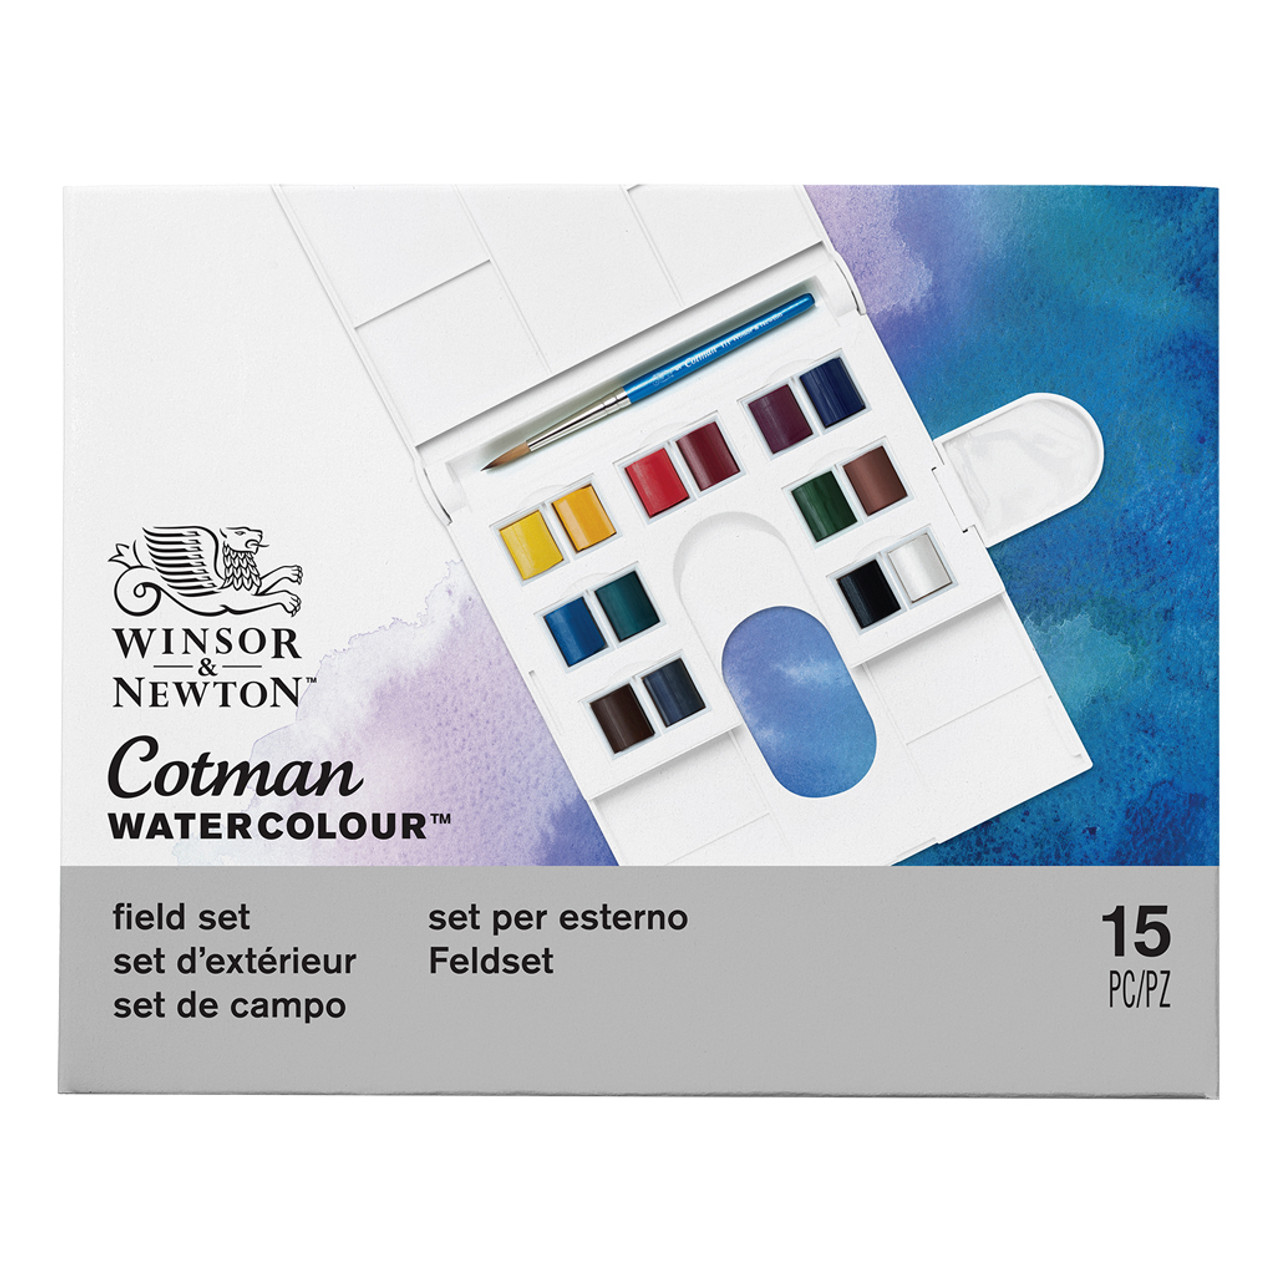 Cotman Pan Watercolor Paint Sets by Winsor & Newton